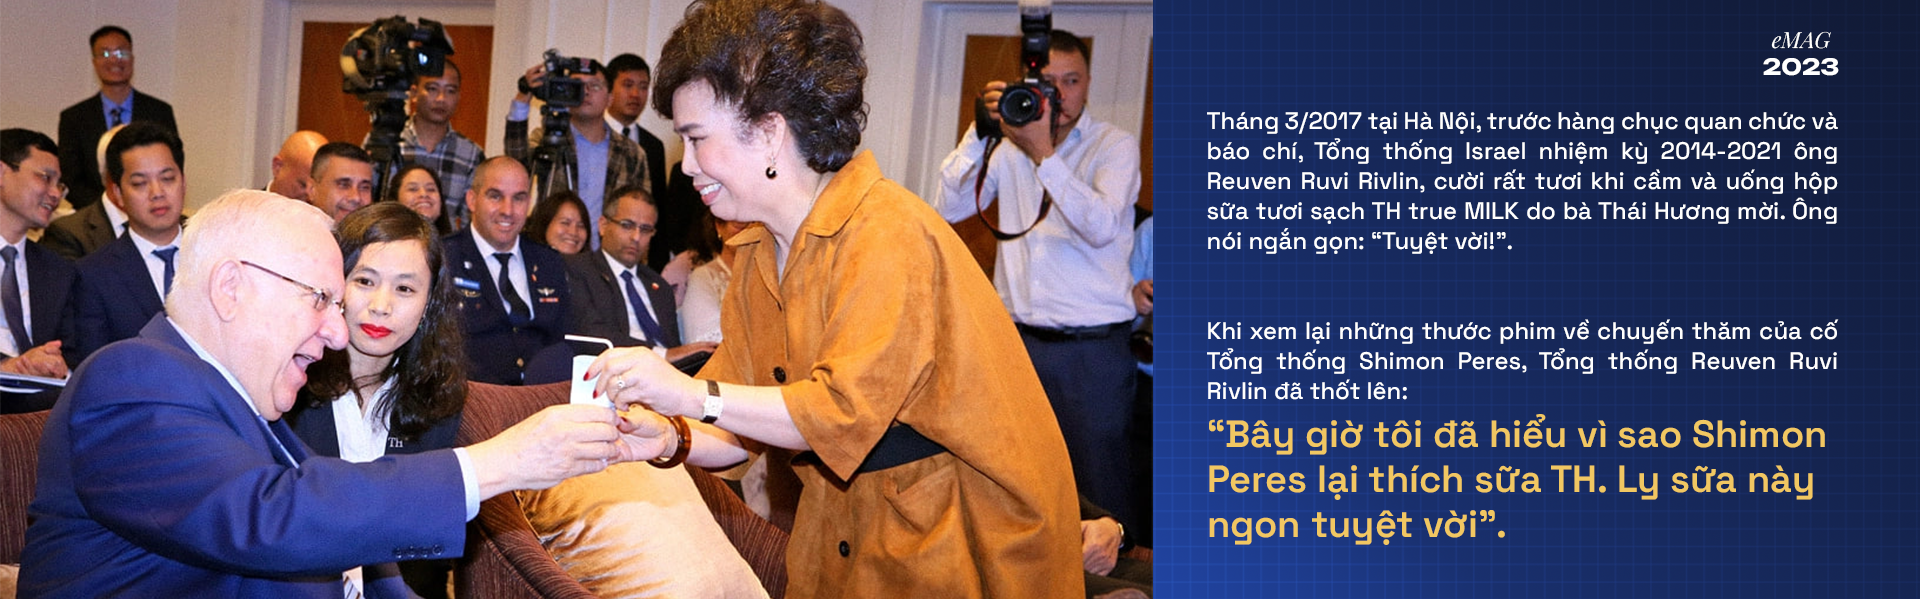 Bí mật phía sau công nghệ “trân quý Mẹ Thiên Nhiên” của Việt Nam khiến 2 tổng thống phải thán phục - Ảnh 14.